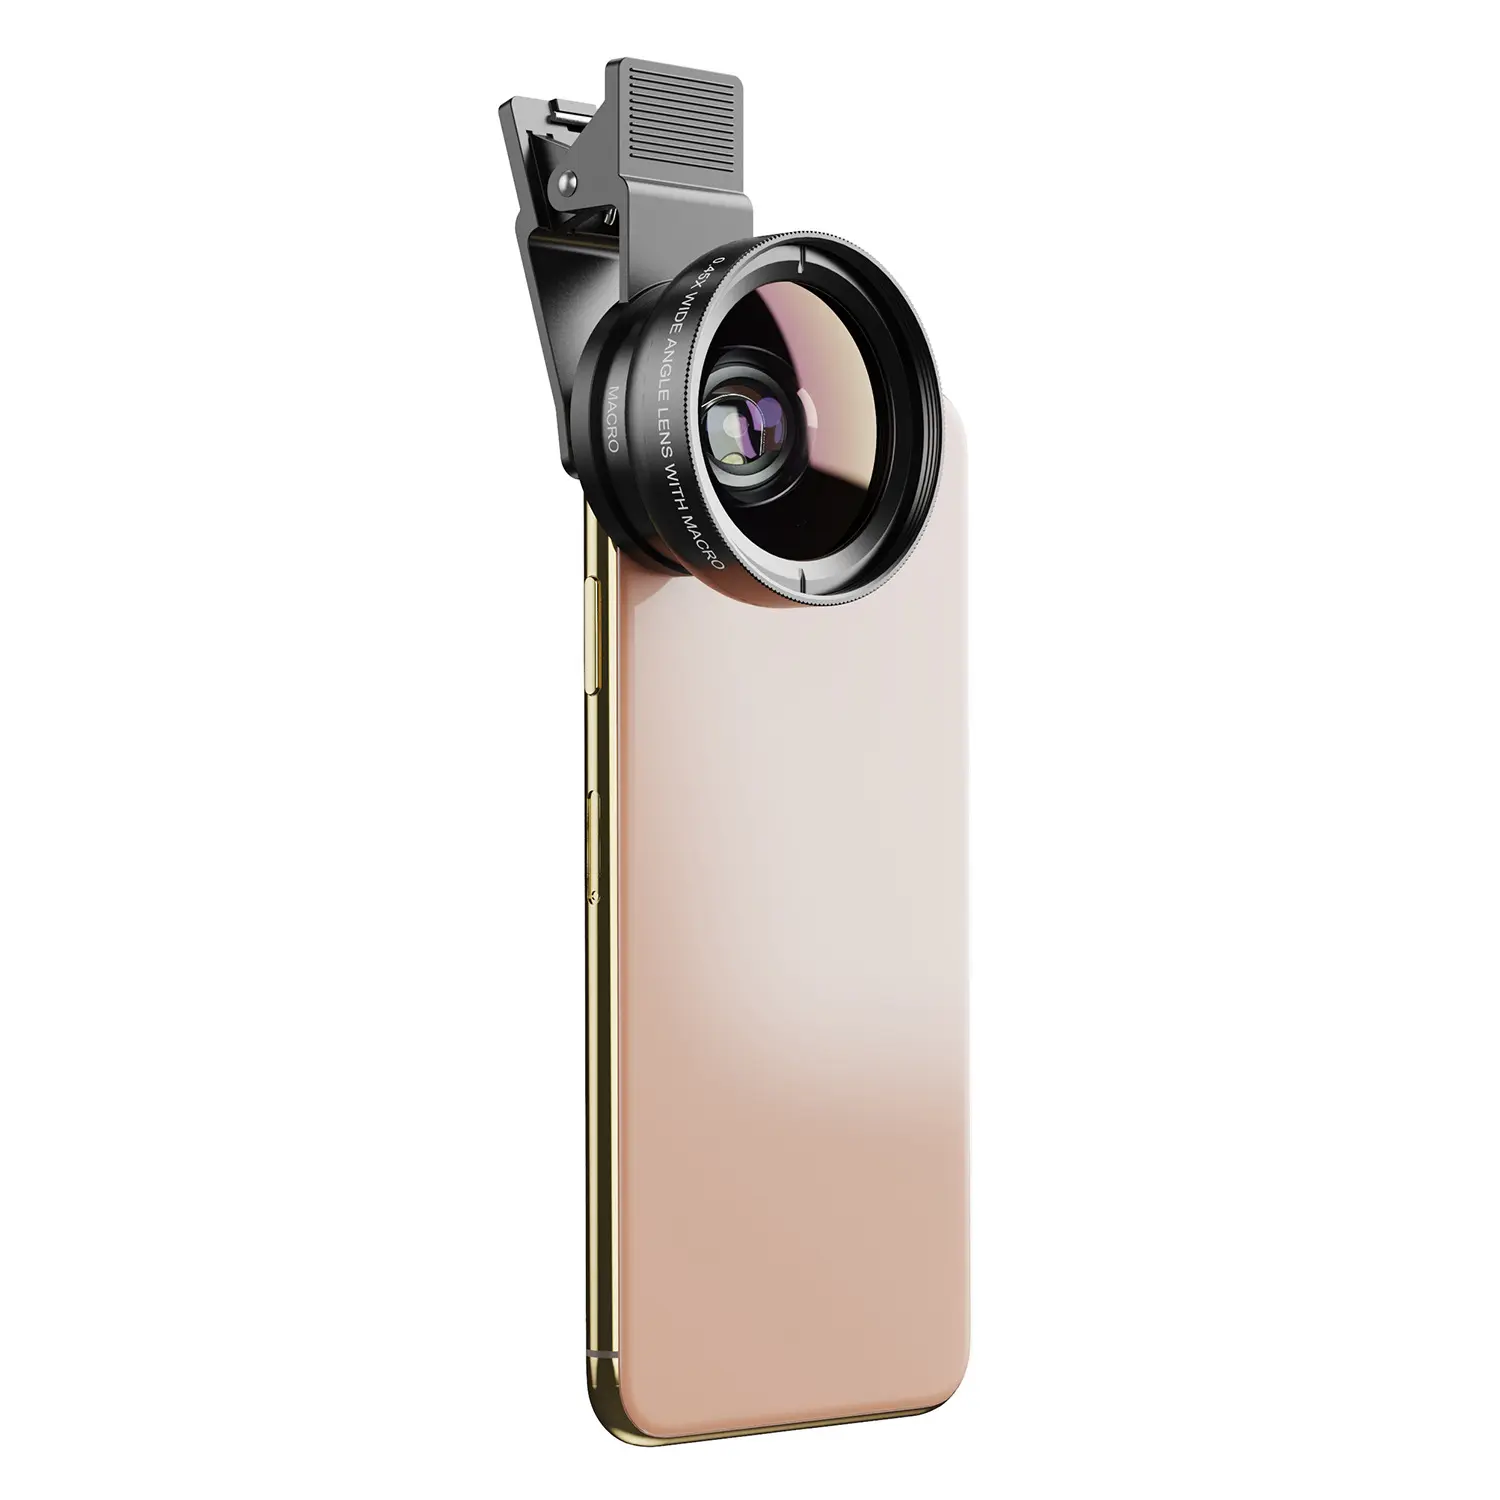 Apexel Kit lensa kamera ponsel, sudut Super lebar Hd 37mm 0,45x dengan 12,5x makro Super untuk Iphone Samsung ponsel pintar